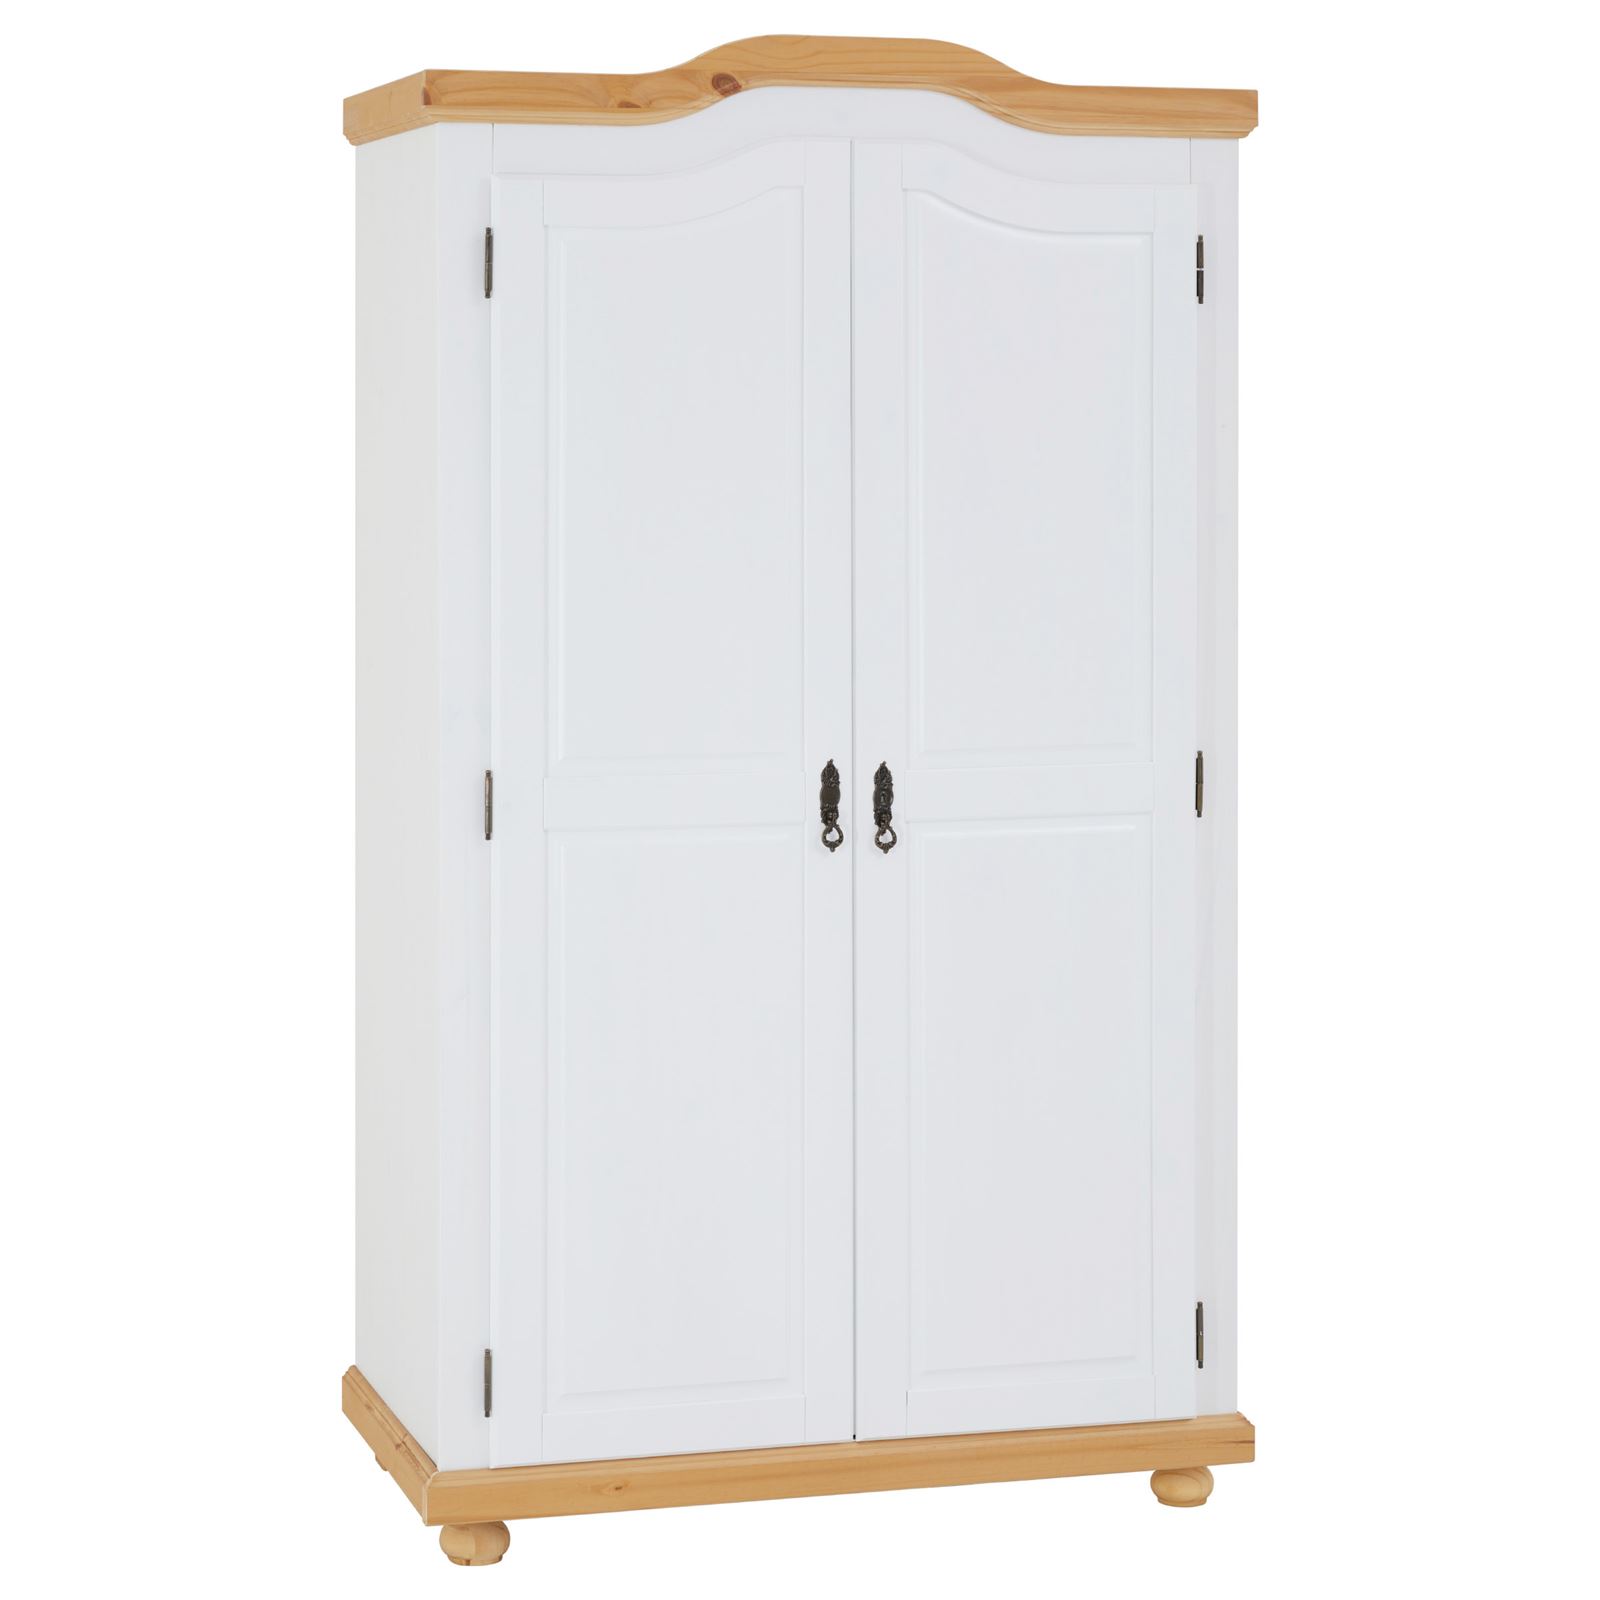 MÜNCHEN Kiefer Kleiderschrank Türen, mit | mobilia24 weiß/braun 2